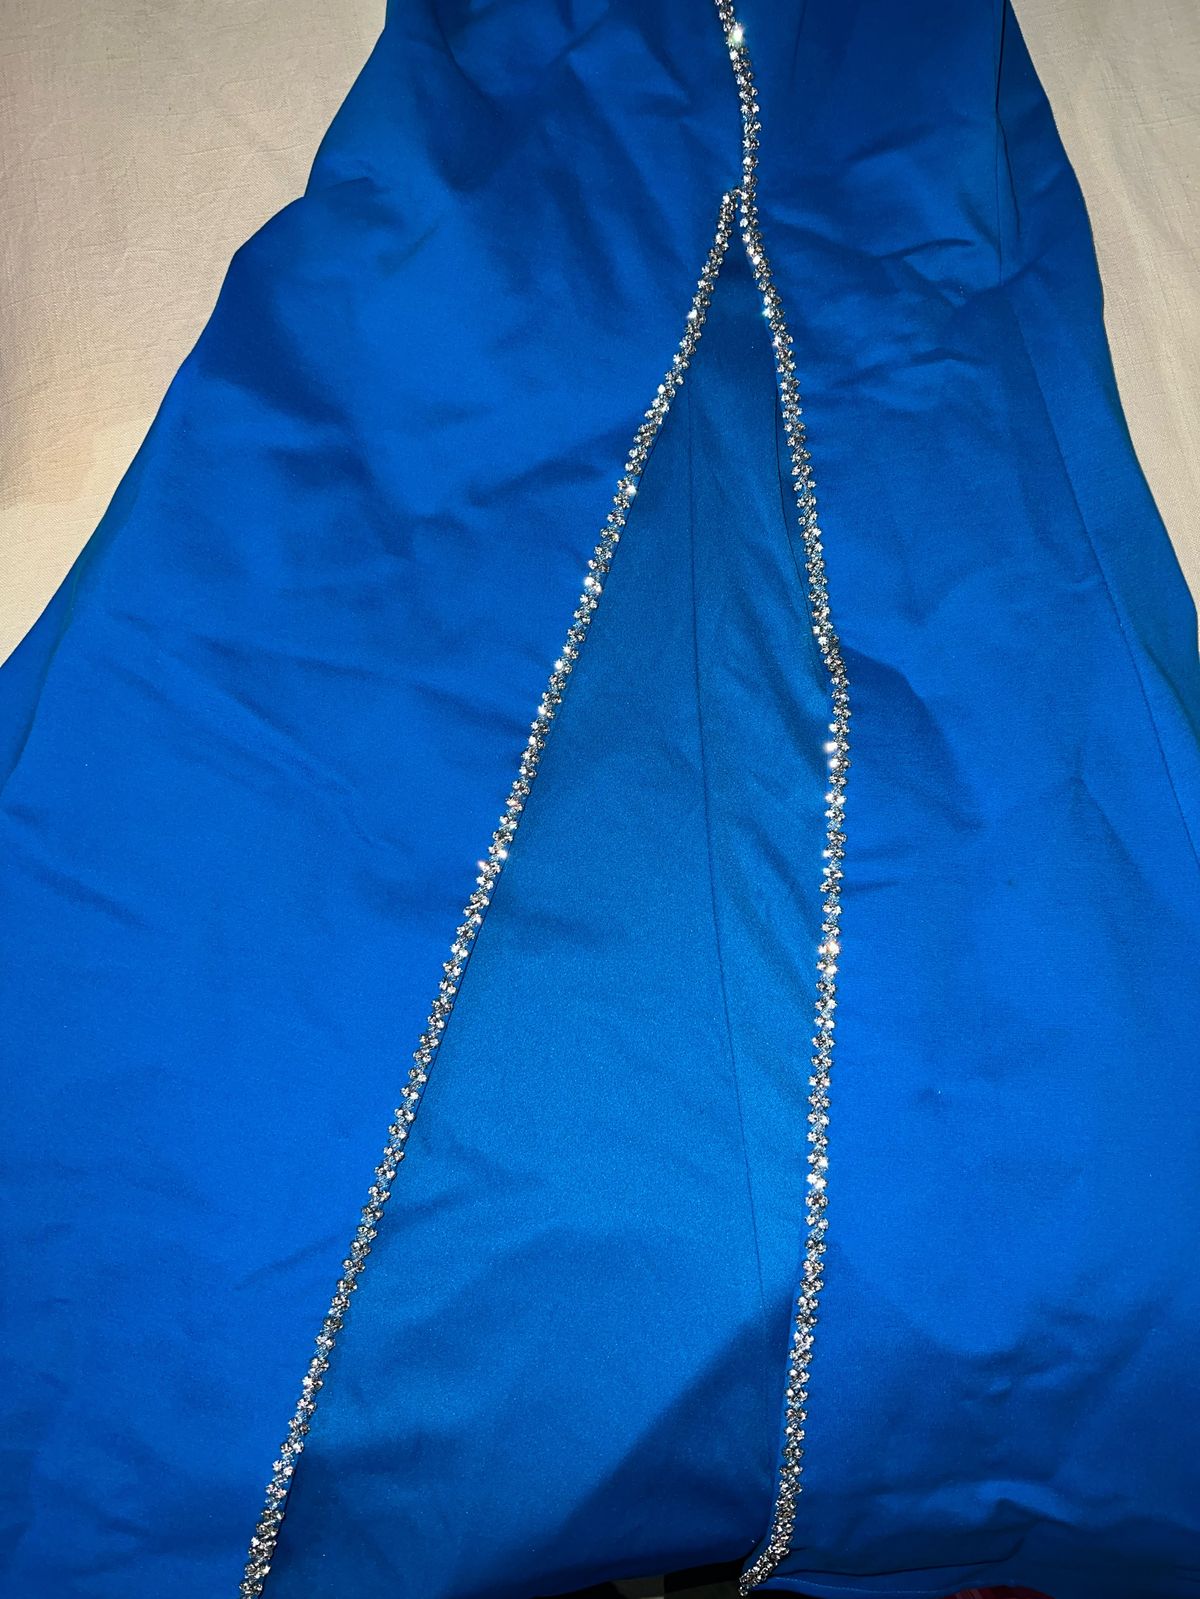 Sherri Hill Size 4 Prom One Shoulder Royal Blue Side Slit Dress on Queenly